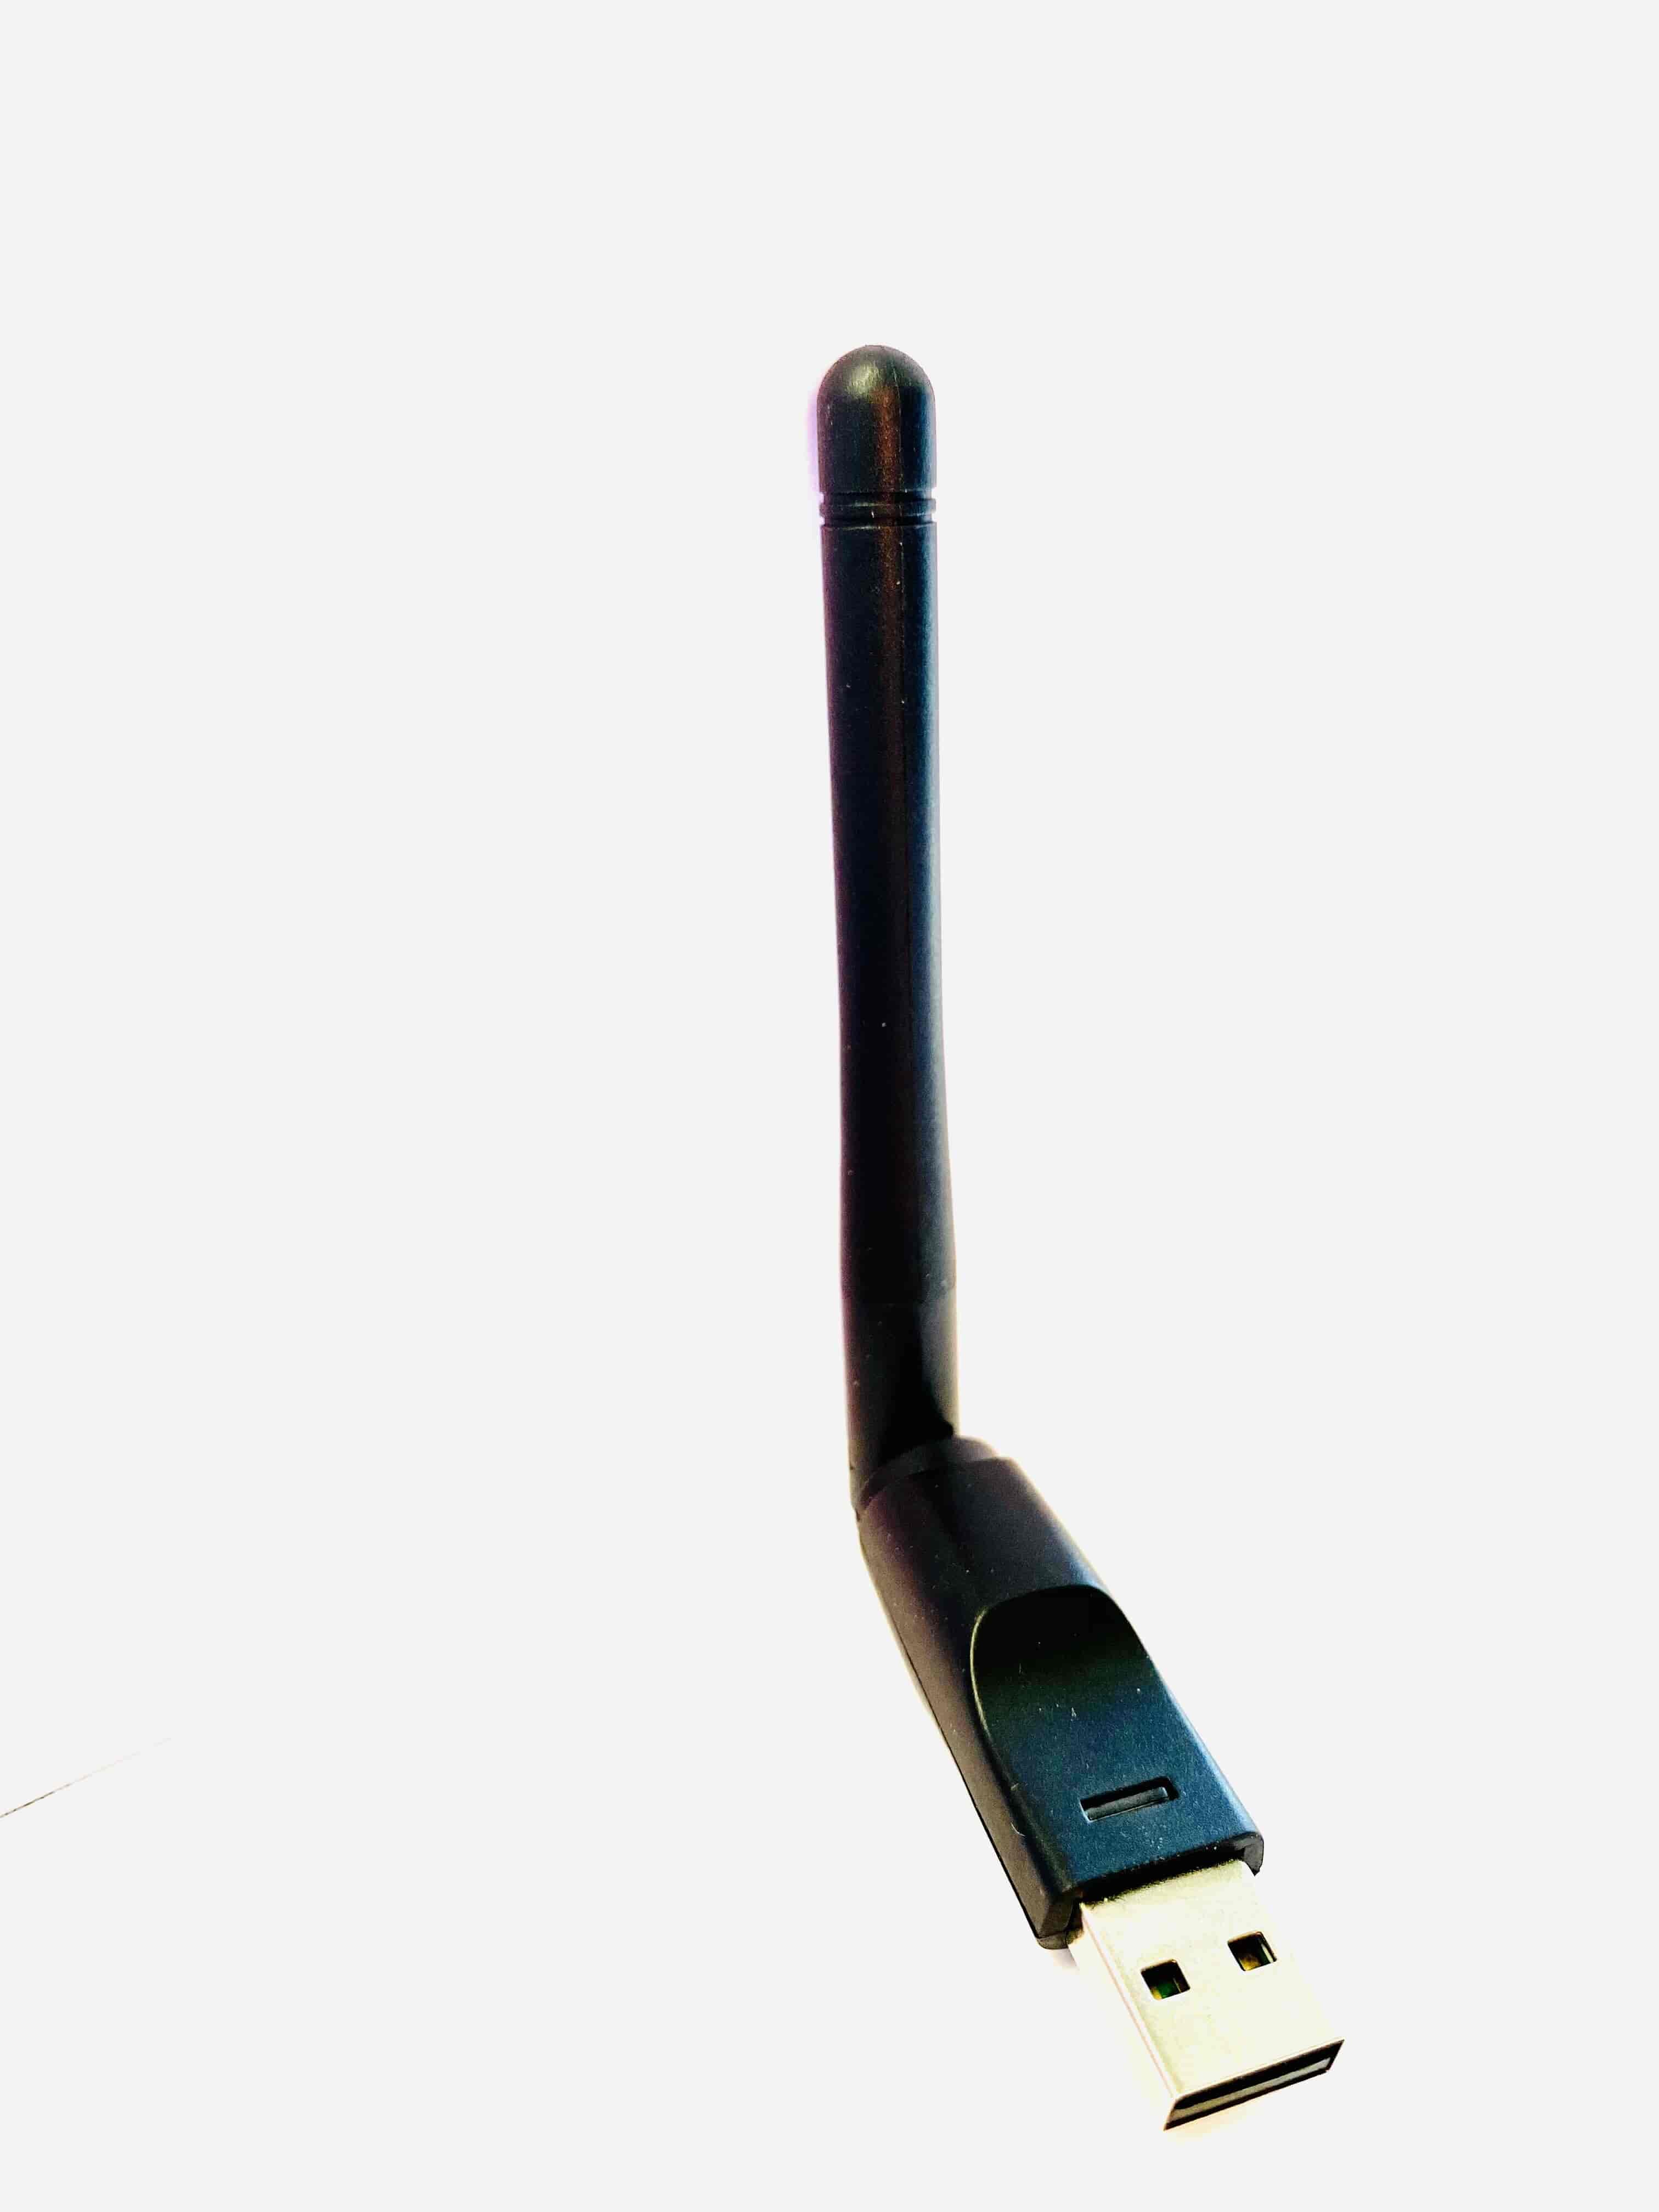 Qviart WiFI USB adapter med antenne - 2.4 GHz -150 Mbps Ralink RT5370nQVIART LUNIXUSB adaptere Sort Qviart WiFI USB adapter med antenne. Med denne adapter kan du hurtigt tilføre dit Qviart udstyr trådløs funktionalitet. 2.4 GHz, 150 Mbps. Qviart WiFi adapteren er bygget over en Ralink RT5370n og understøttes derfor af en række moderne Windows, Mac og Linux udstyr.